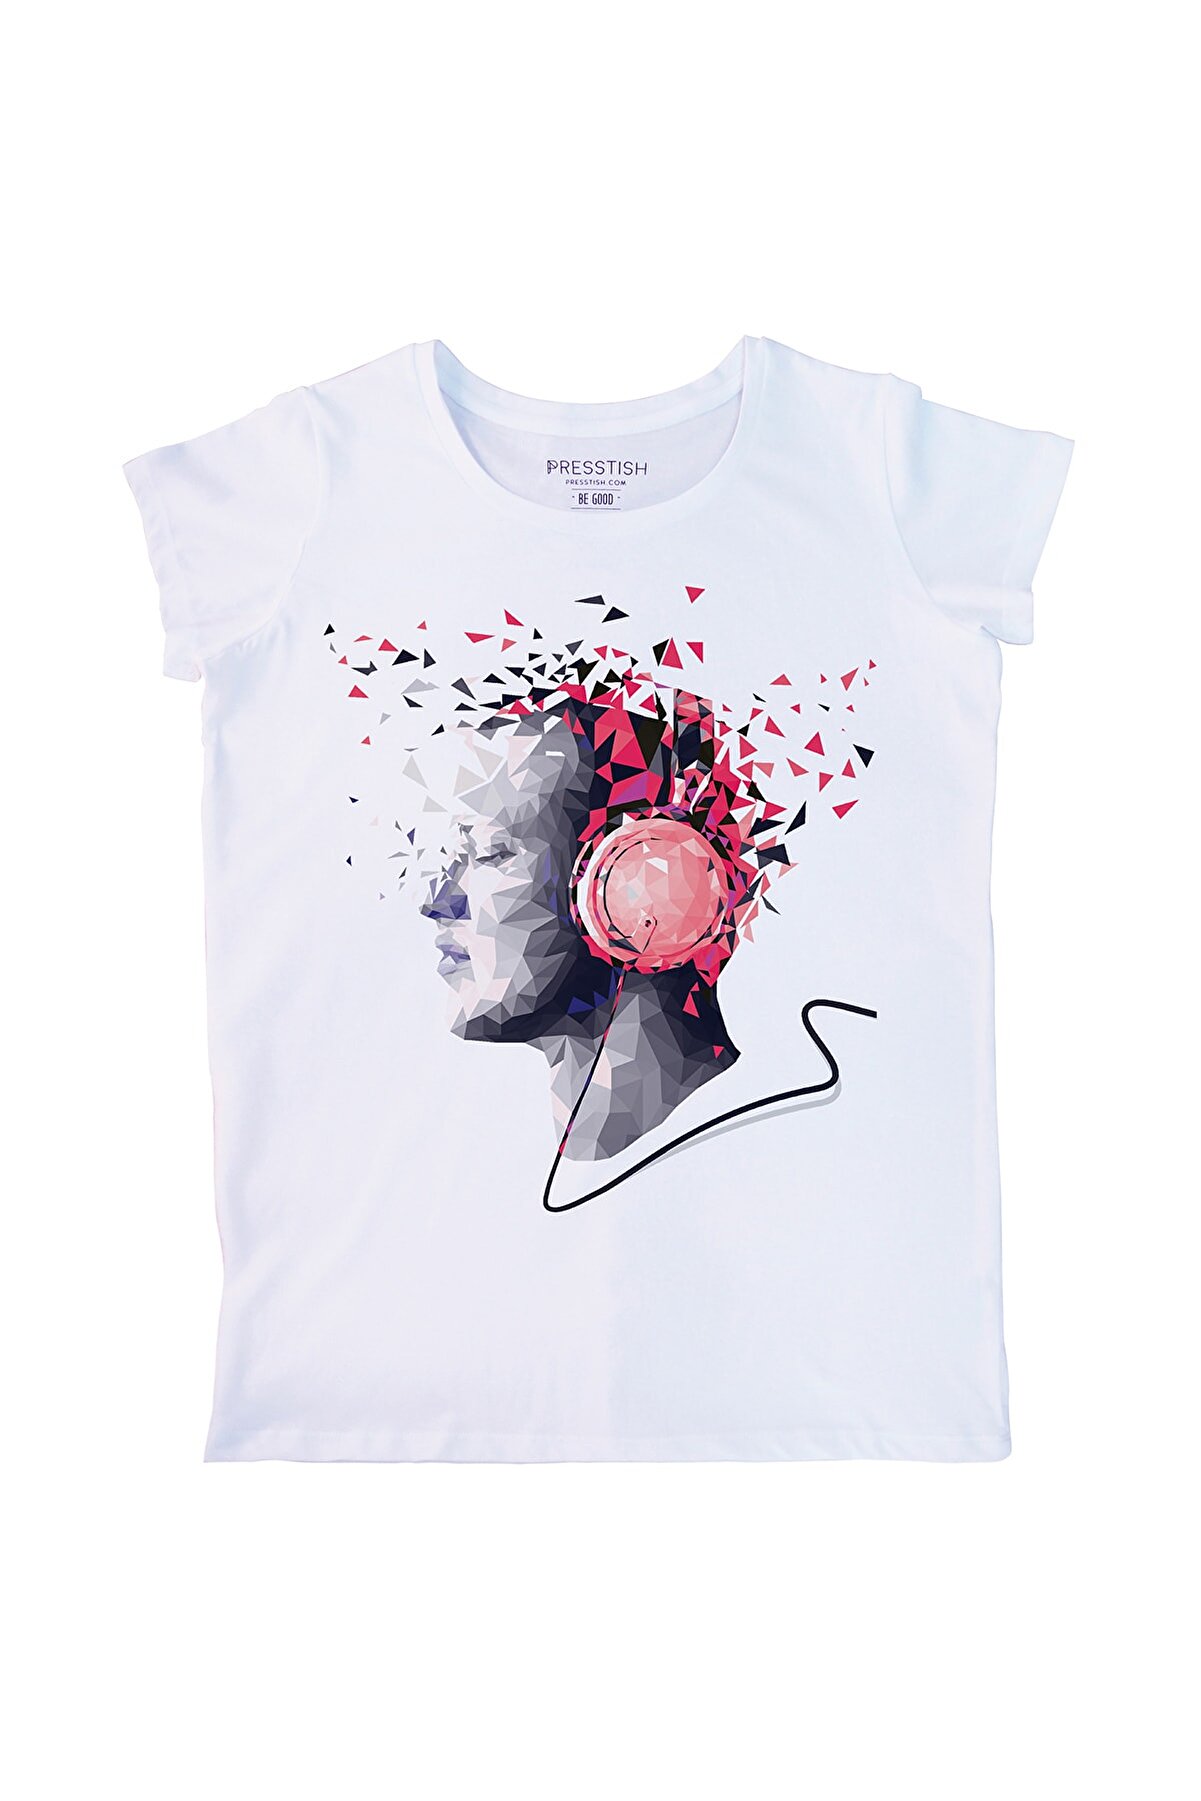 Presstish Crystal Music Tasarım Baskılı Kadın Tişört